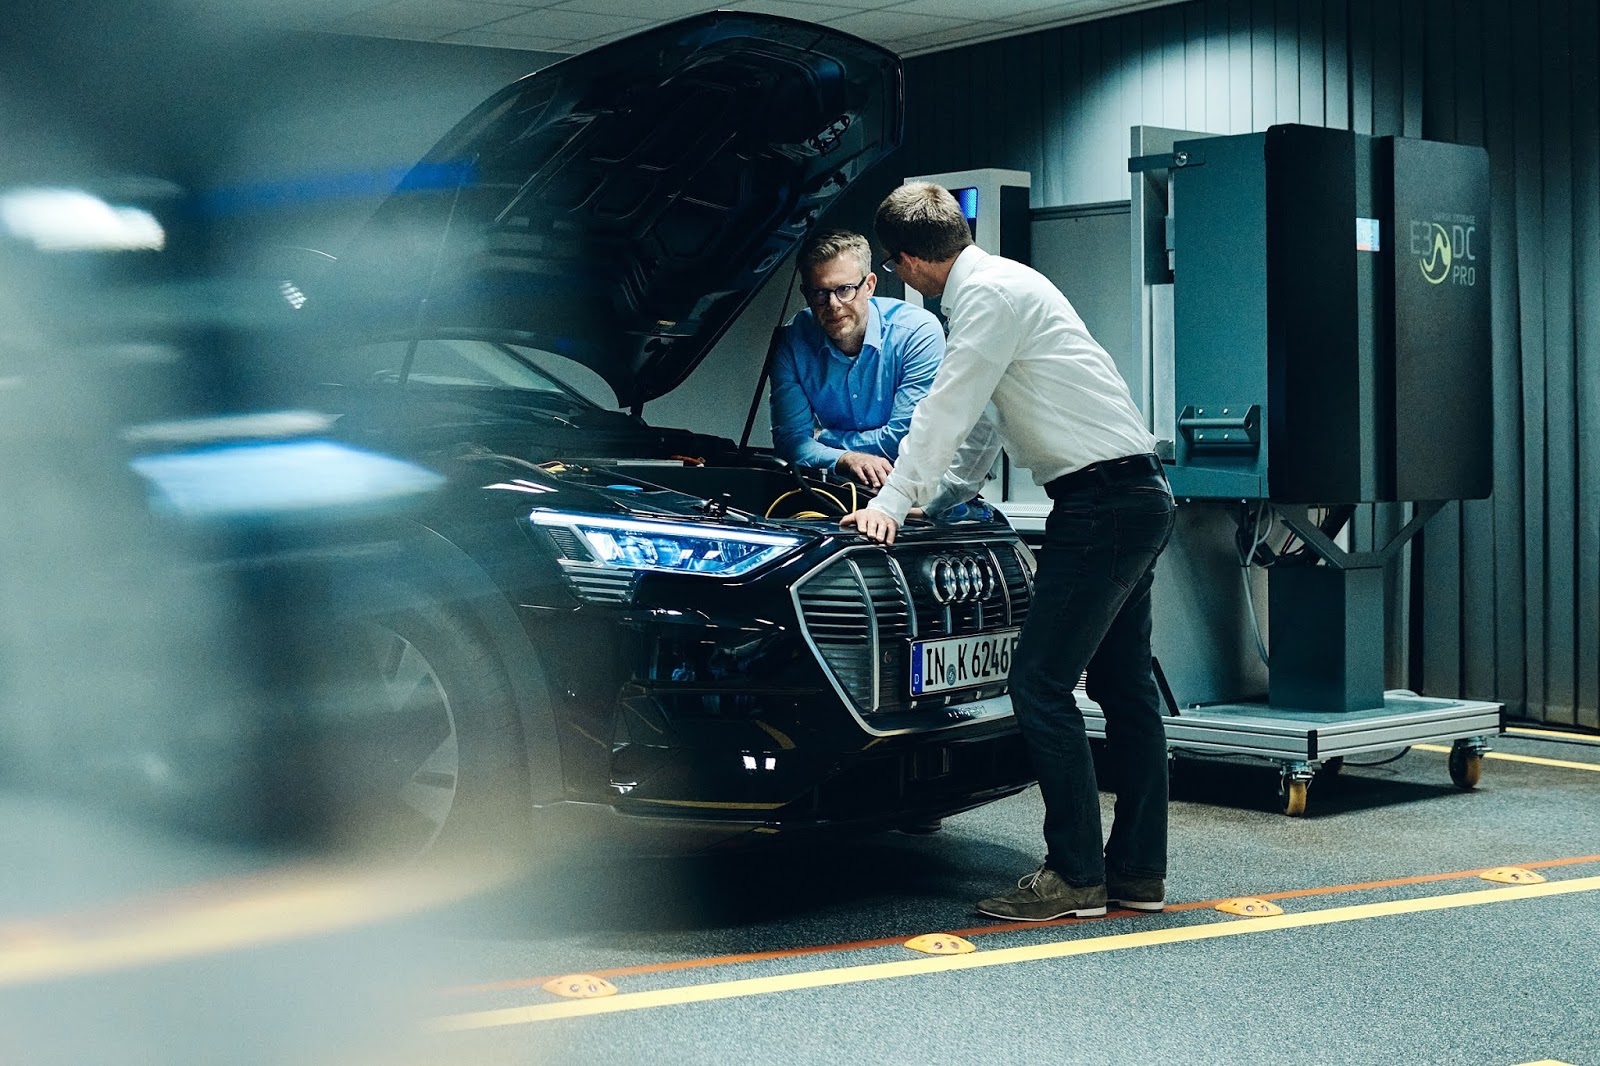 AUDI2B 2B25CE259125CE259C25CE25A625CE259925CE259425CE25A125CE259F25CE259C25CE25972B25CE25A625CE259F25CE25A125CE25A425CE259925CE25A325CE2597 4 Αμφίδρομη φόρτιση: η Audi ερευνά επιπλέον οφέλη από την ηλεκτροκίνηση